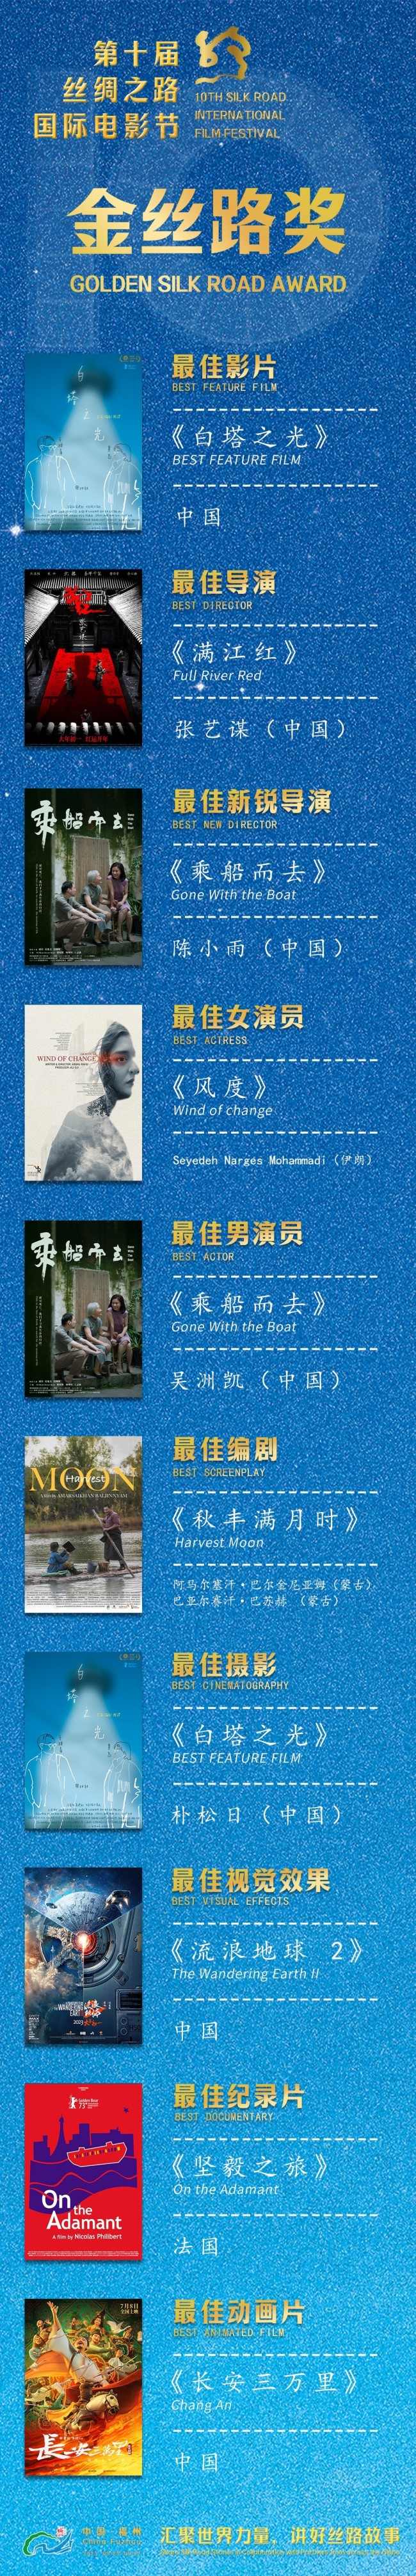 第十届丝绸之路国际电影节在福建福州圆满闭幕